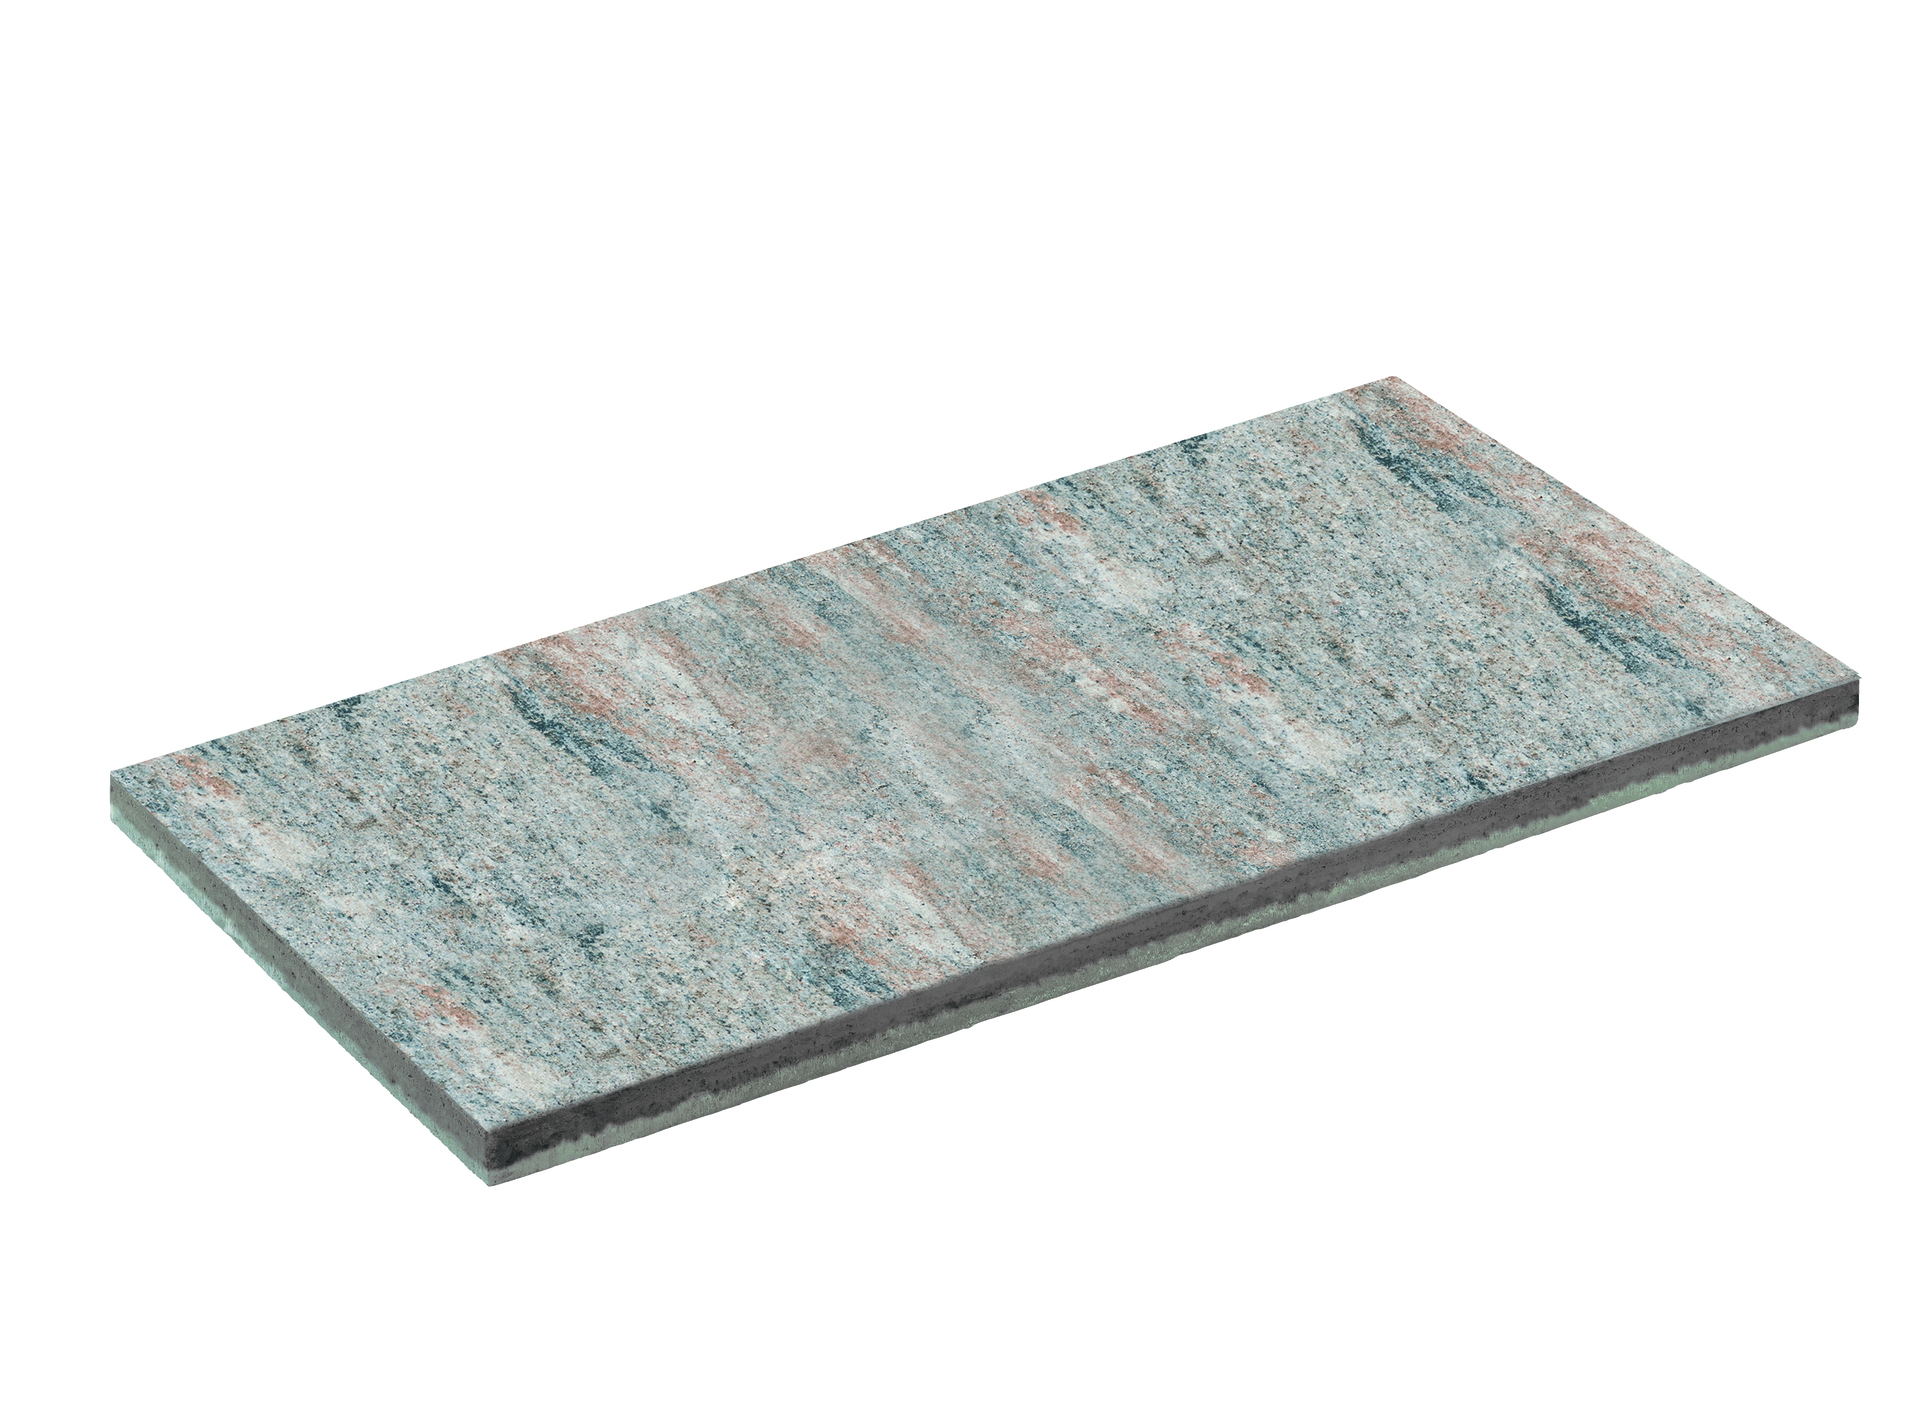 Diephaus Terrassenplatte Atrio 100x50x5cm